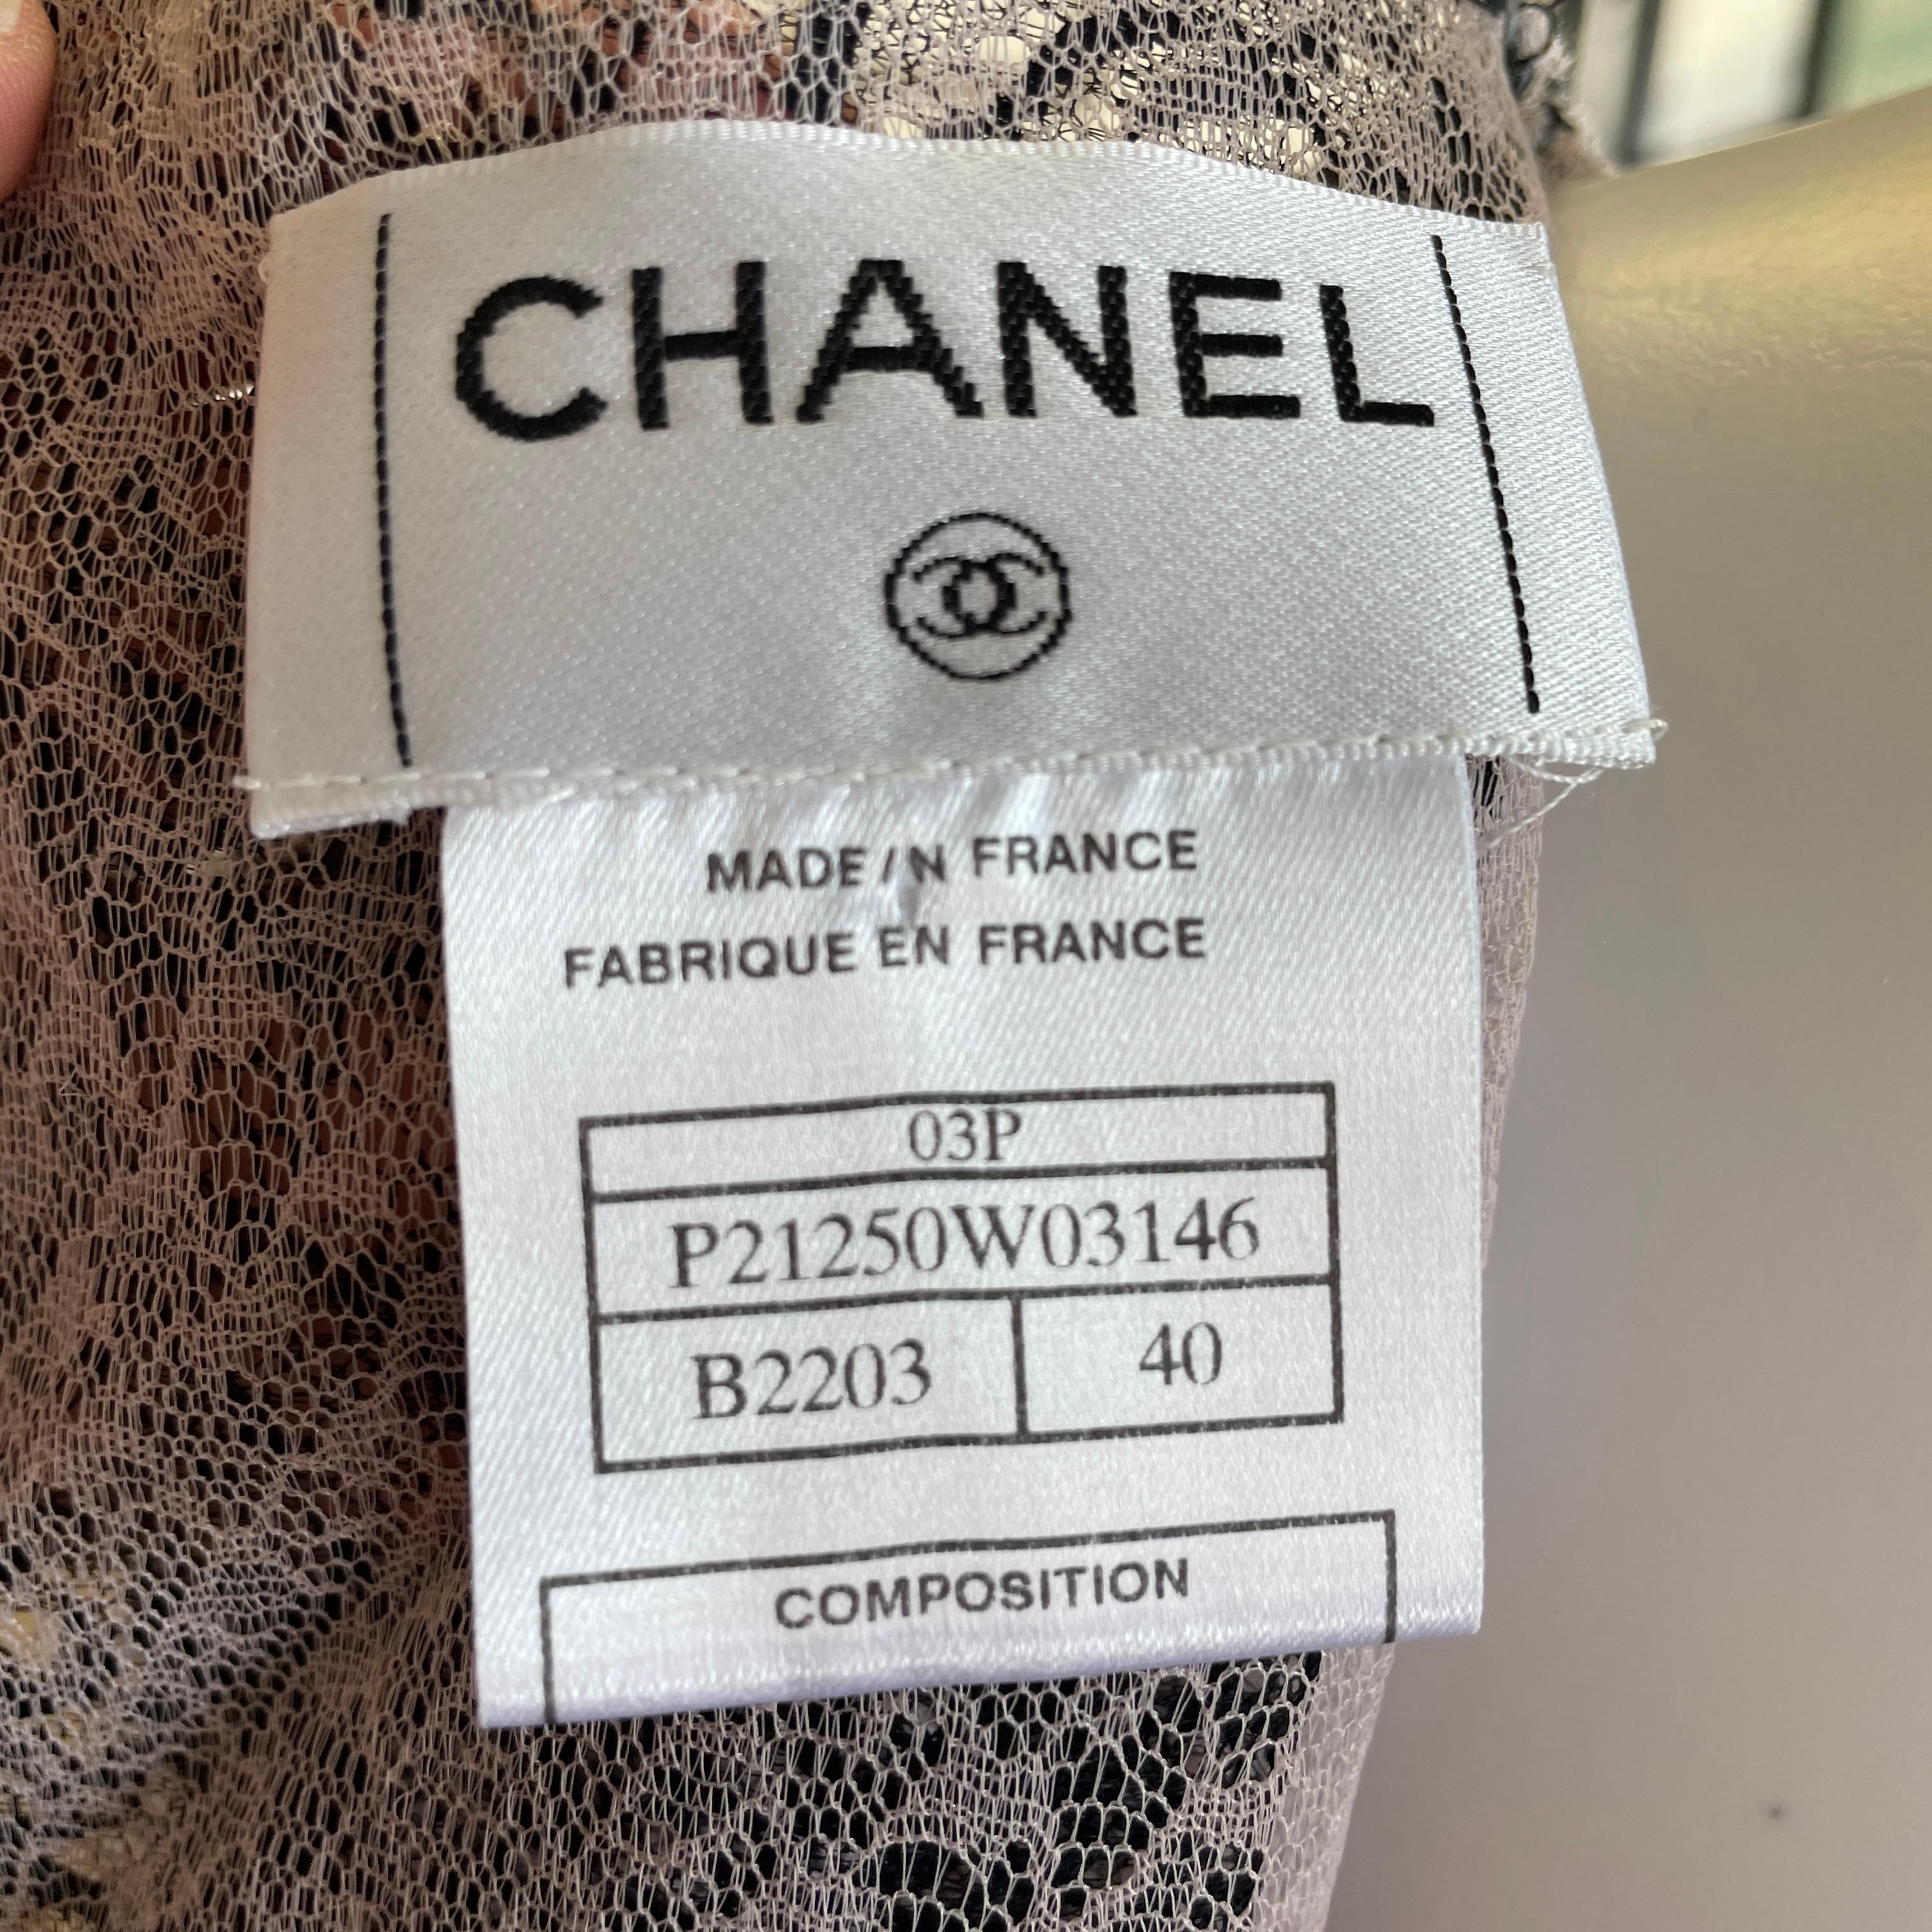 Chanel 03p Camellia Flower Lace Top Blouse With 3 Tier Cravat 40